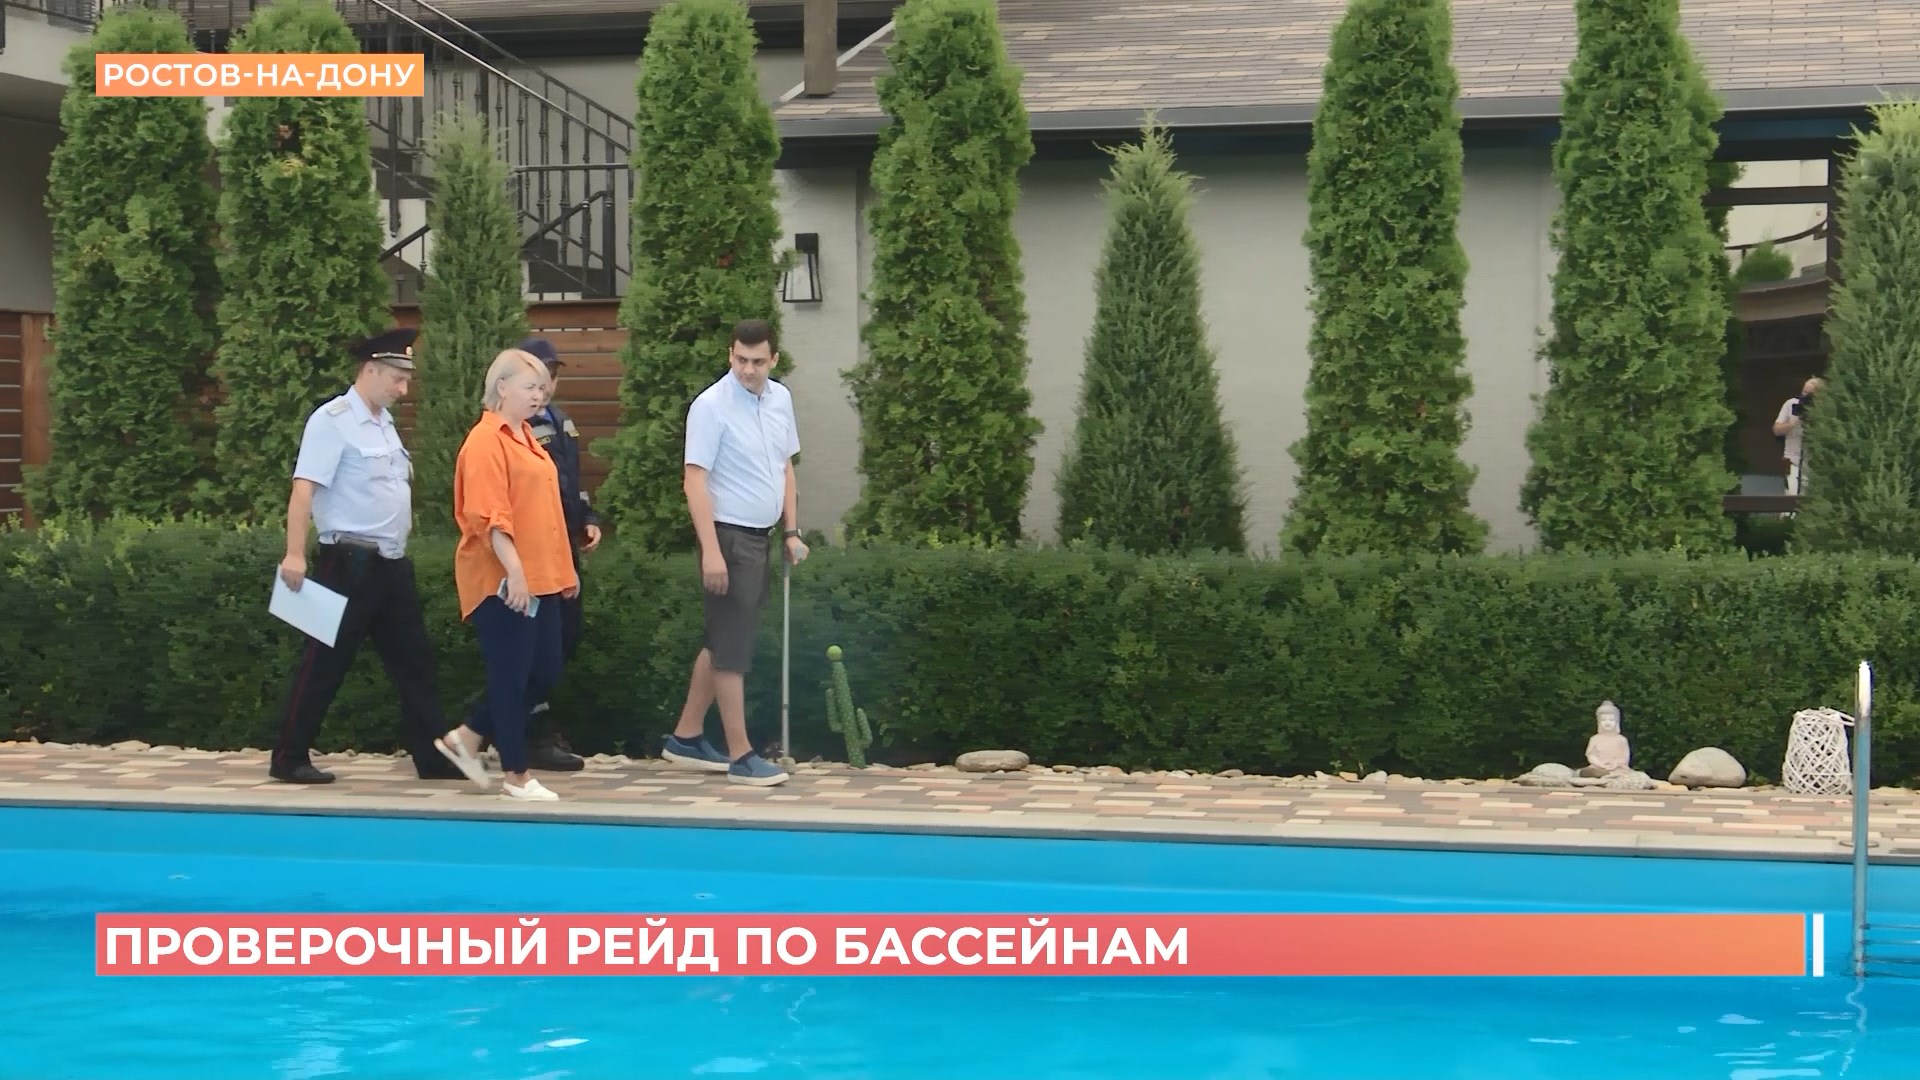 7 бассейнов в Ростове работали с нарушениями правил безопасности